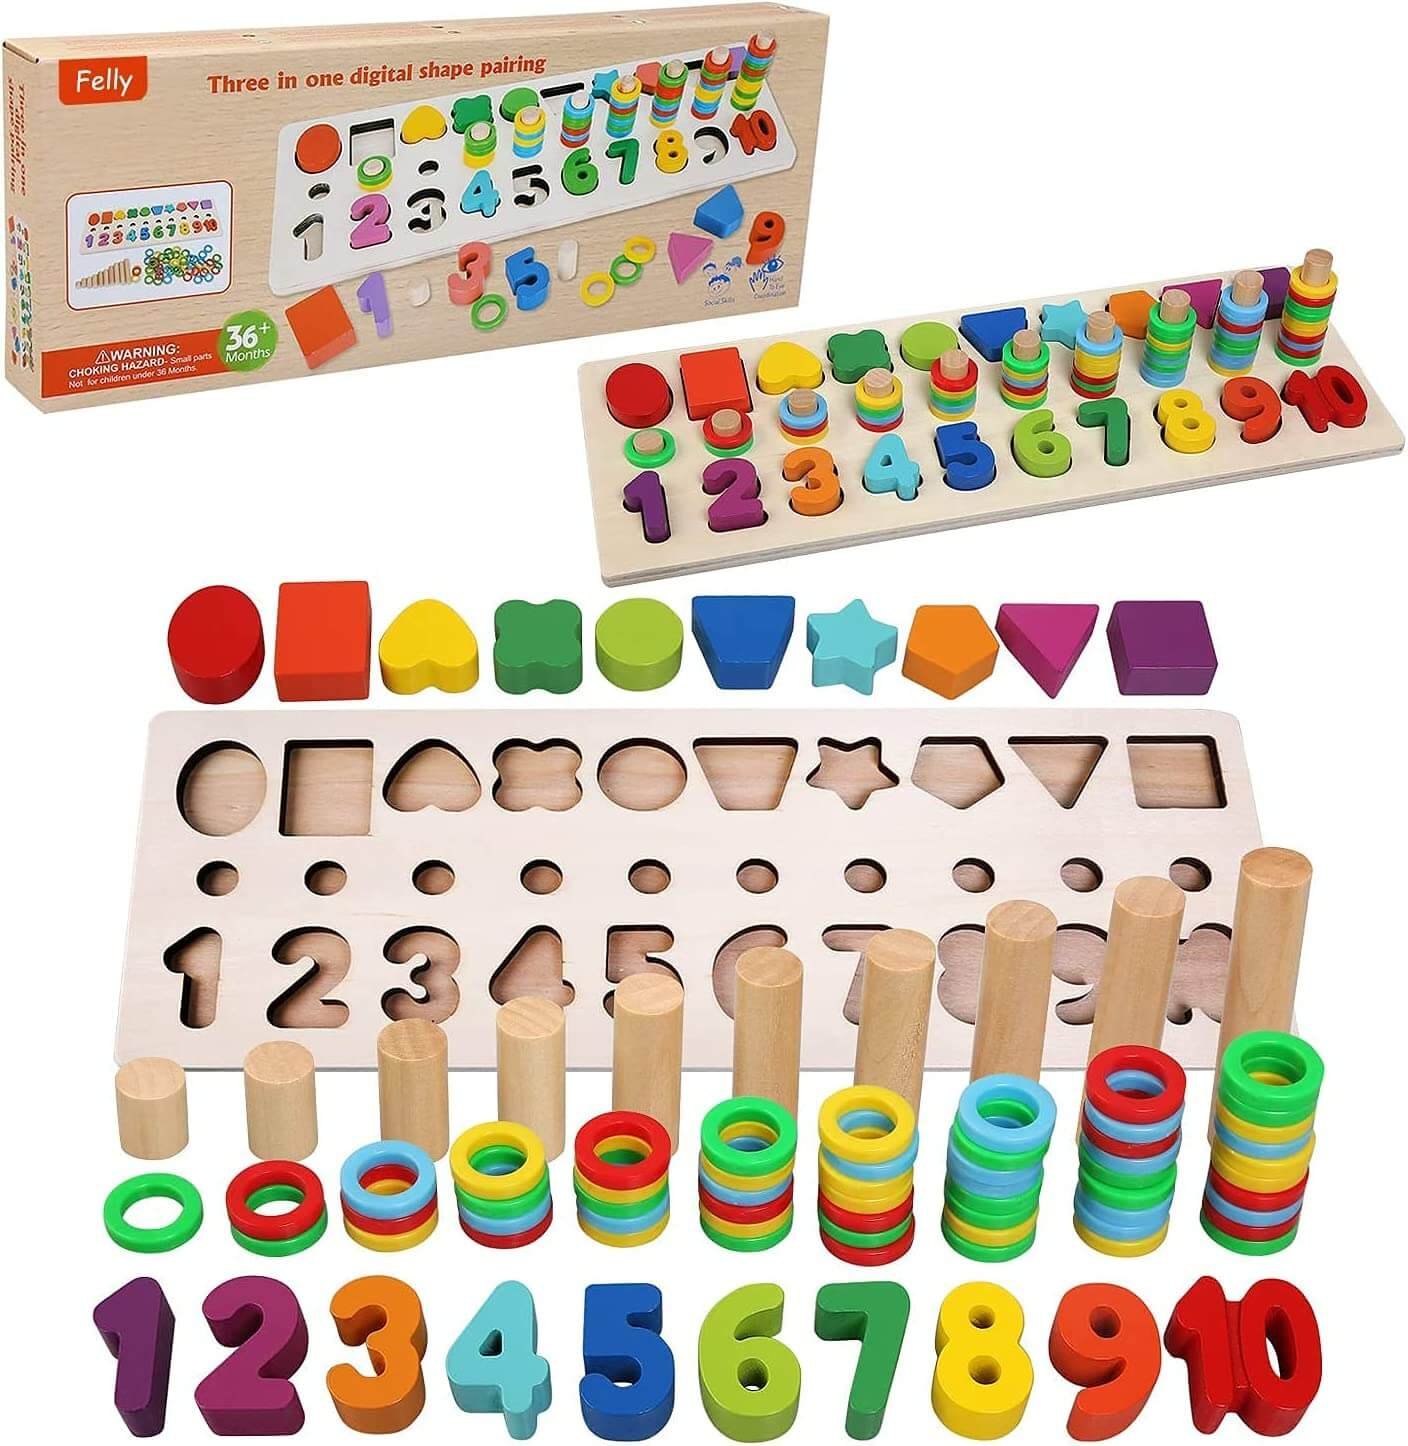 GUÍA] Juguetes Montessori: tipos, ventajas y recomendaciones